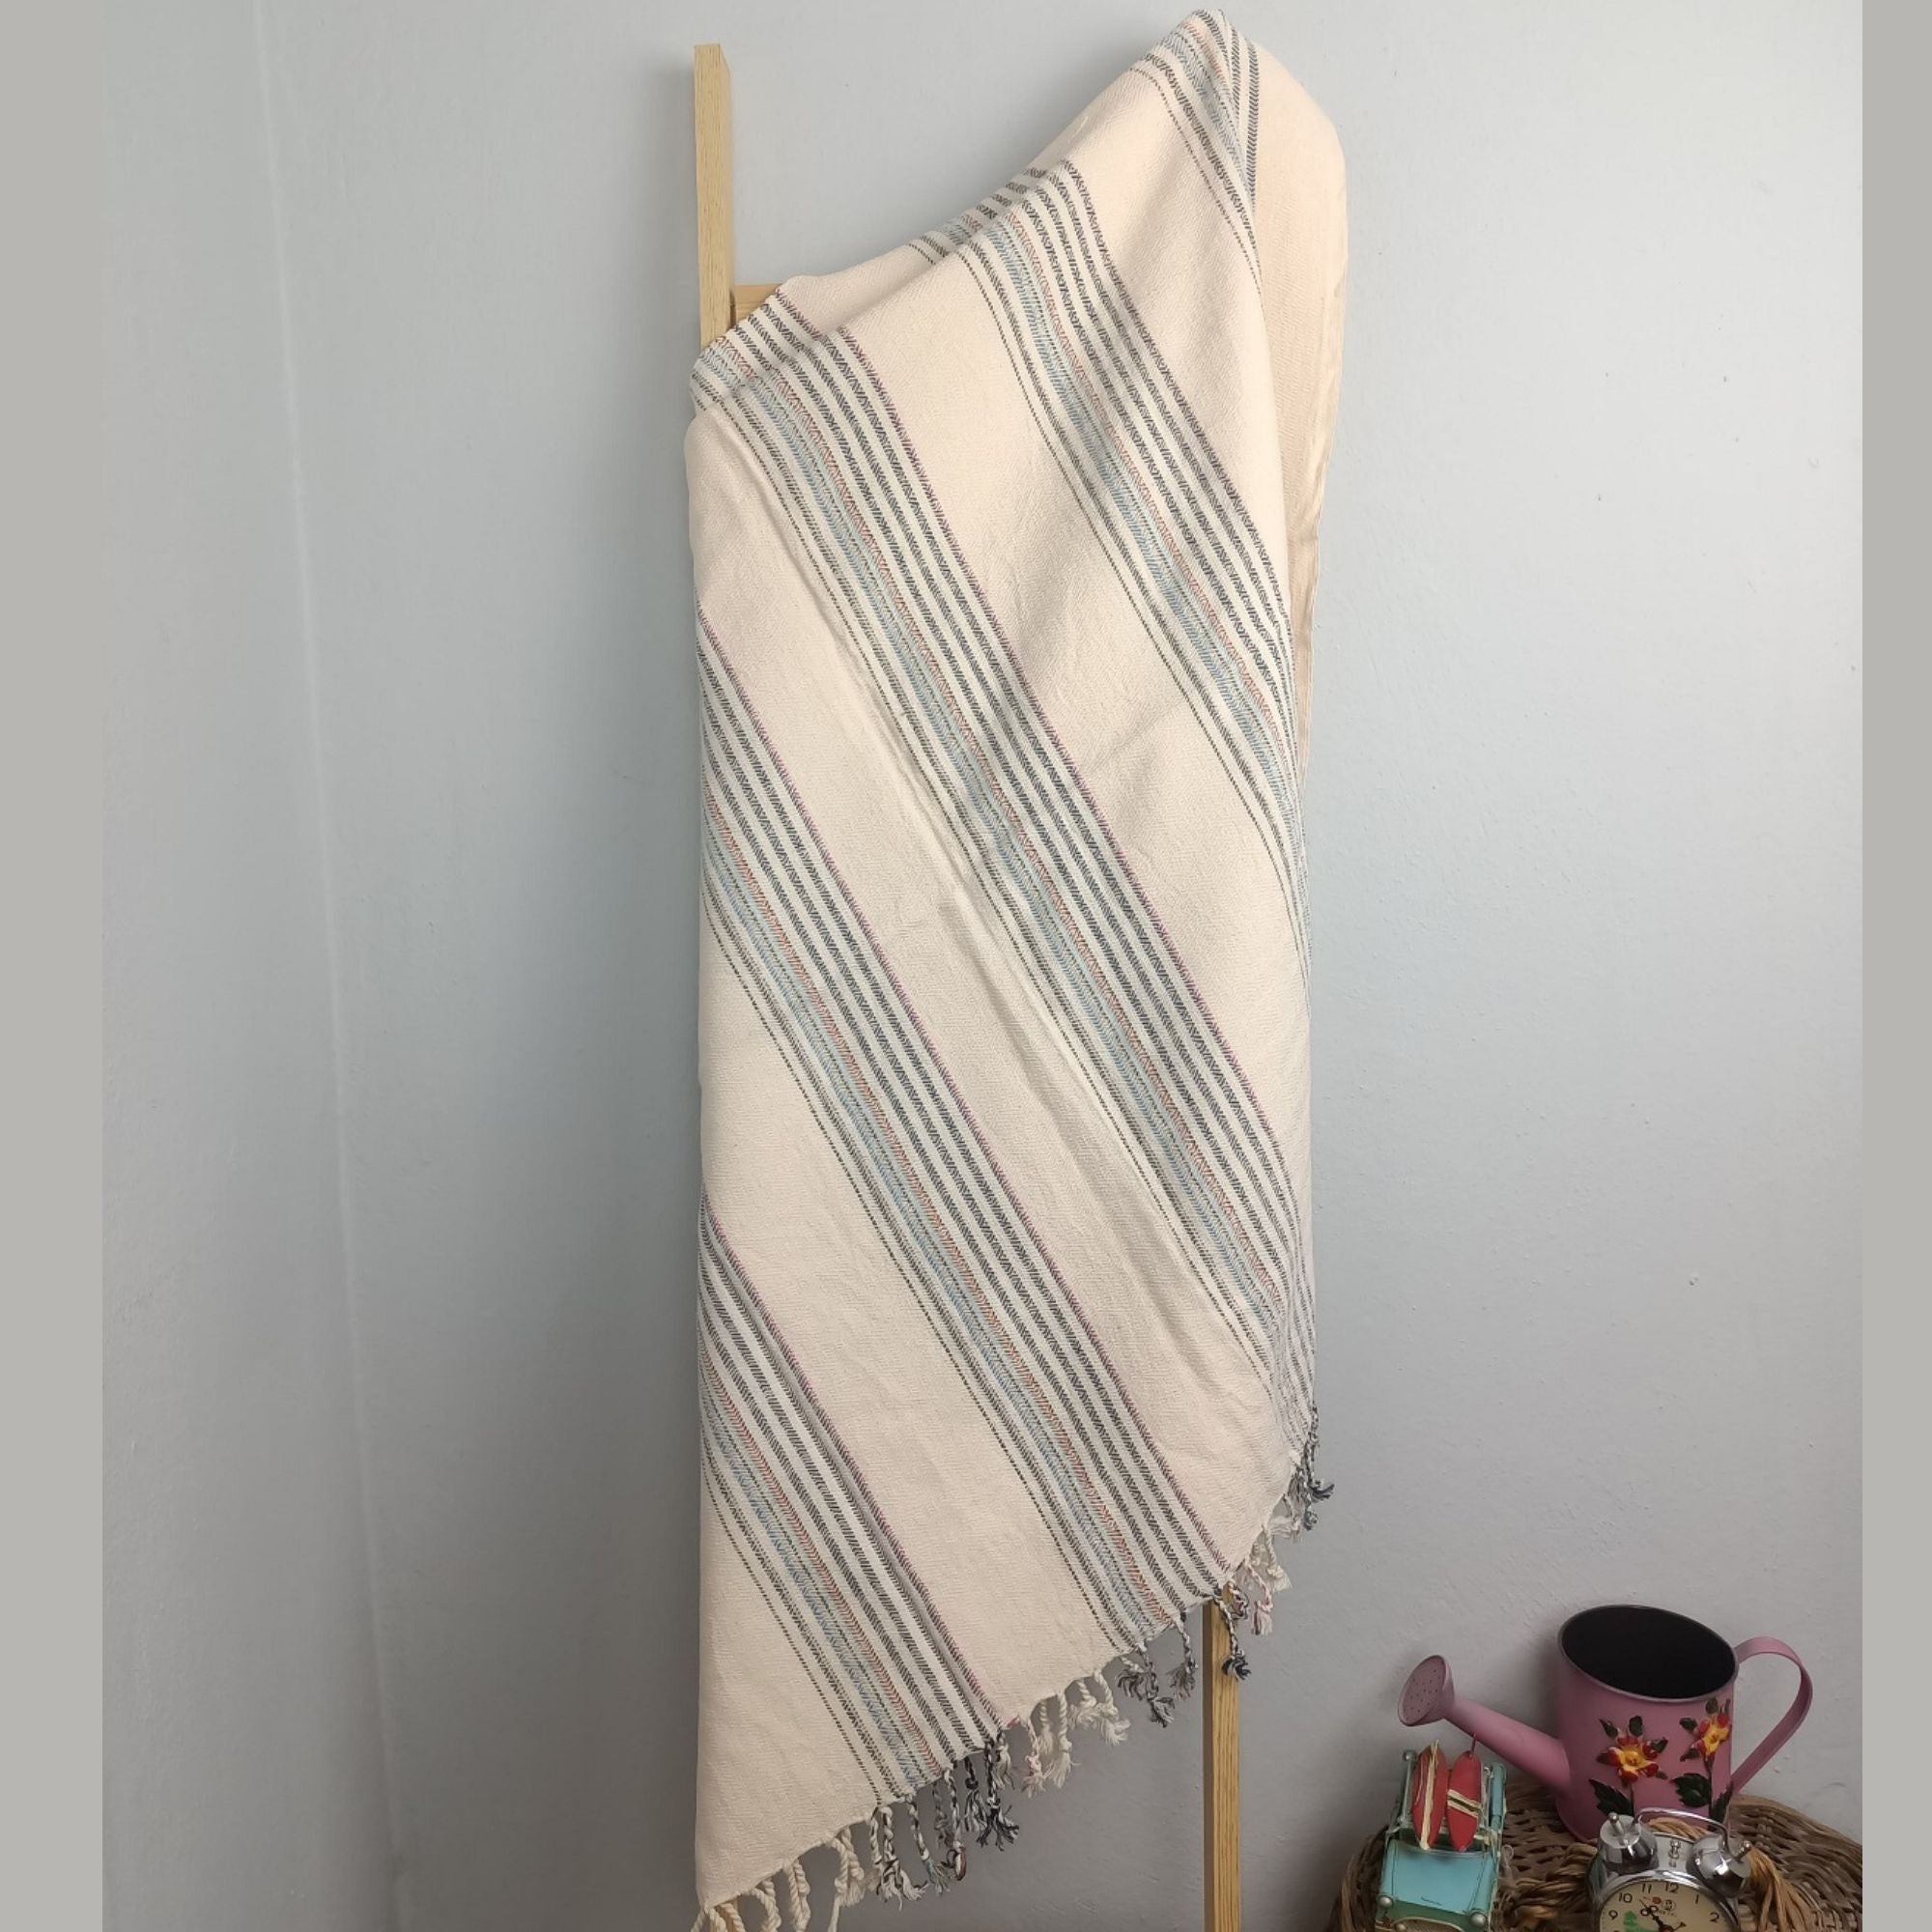 Zeus Türkisches Handtuch – 100 % Baumwolle – 100 x 180 cm